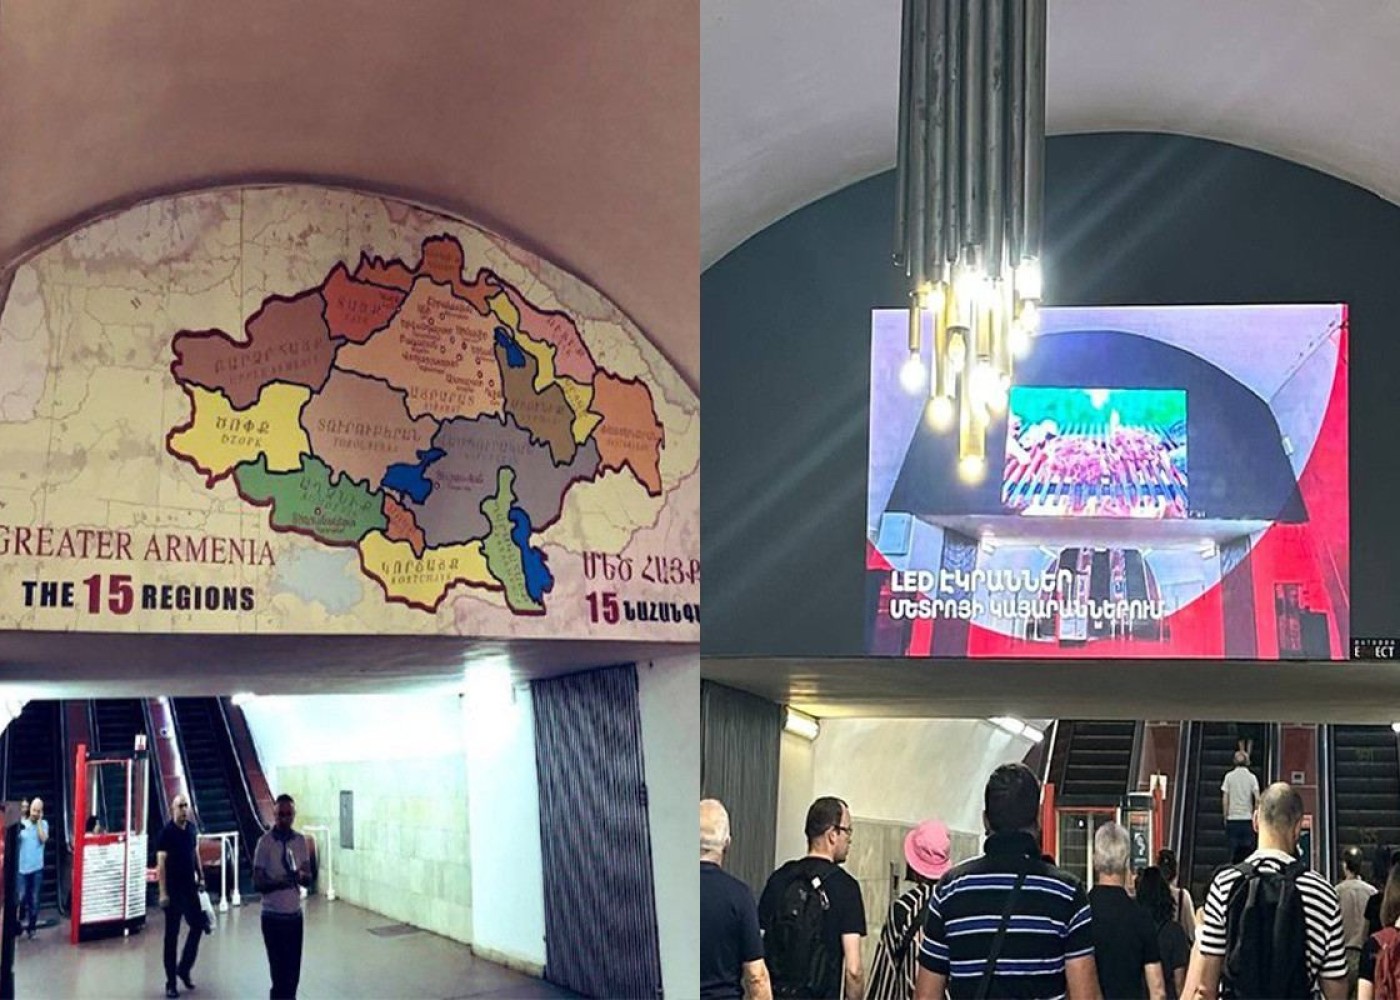 İrəvan metrosundakı qondarma “Böyük Ermənistan”xəritəsi yığışdırıldı